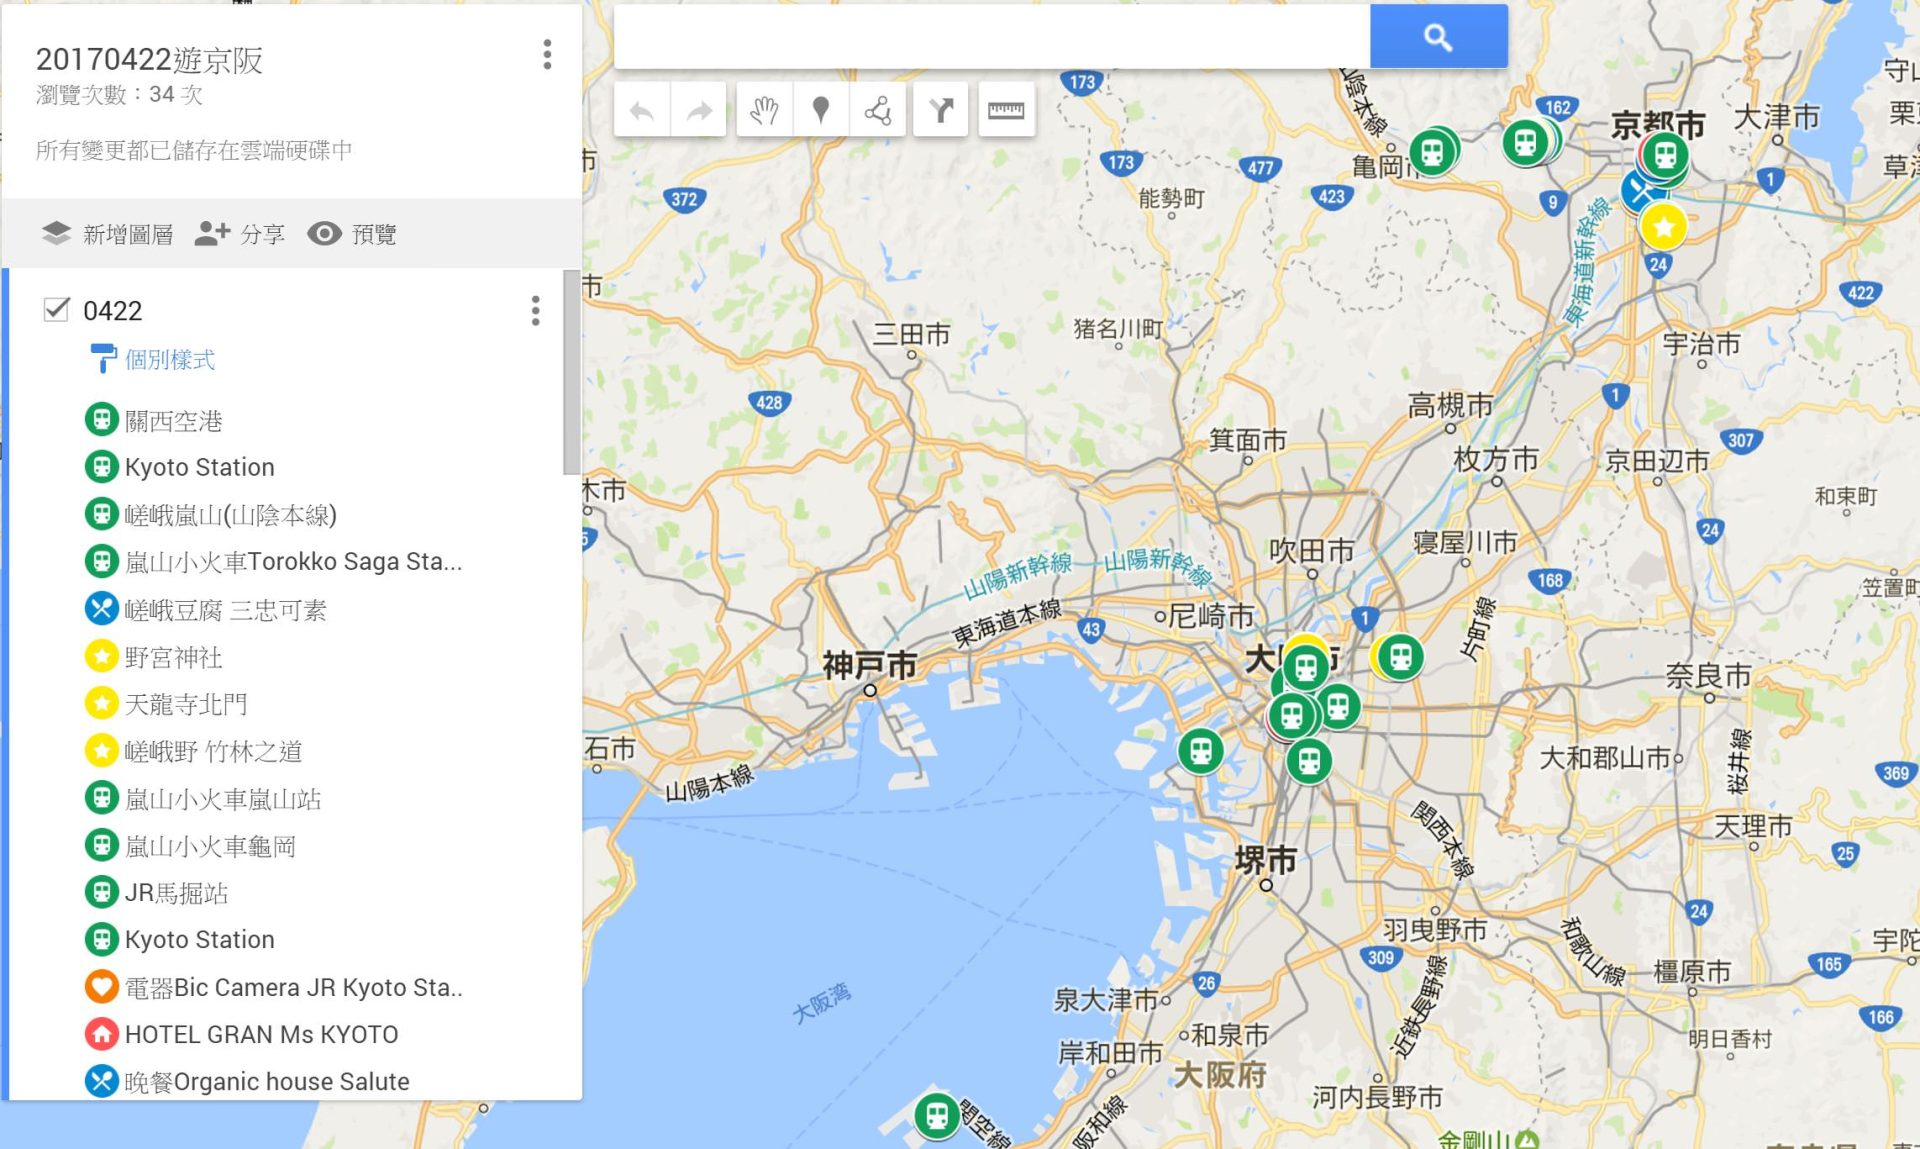 京都大阪5天4夜自由行 | 帶長輩旅遊。交通/飯店/景點/行程/花費/地圖/素食餐廳 2017